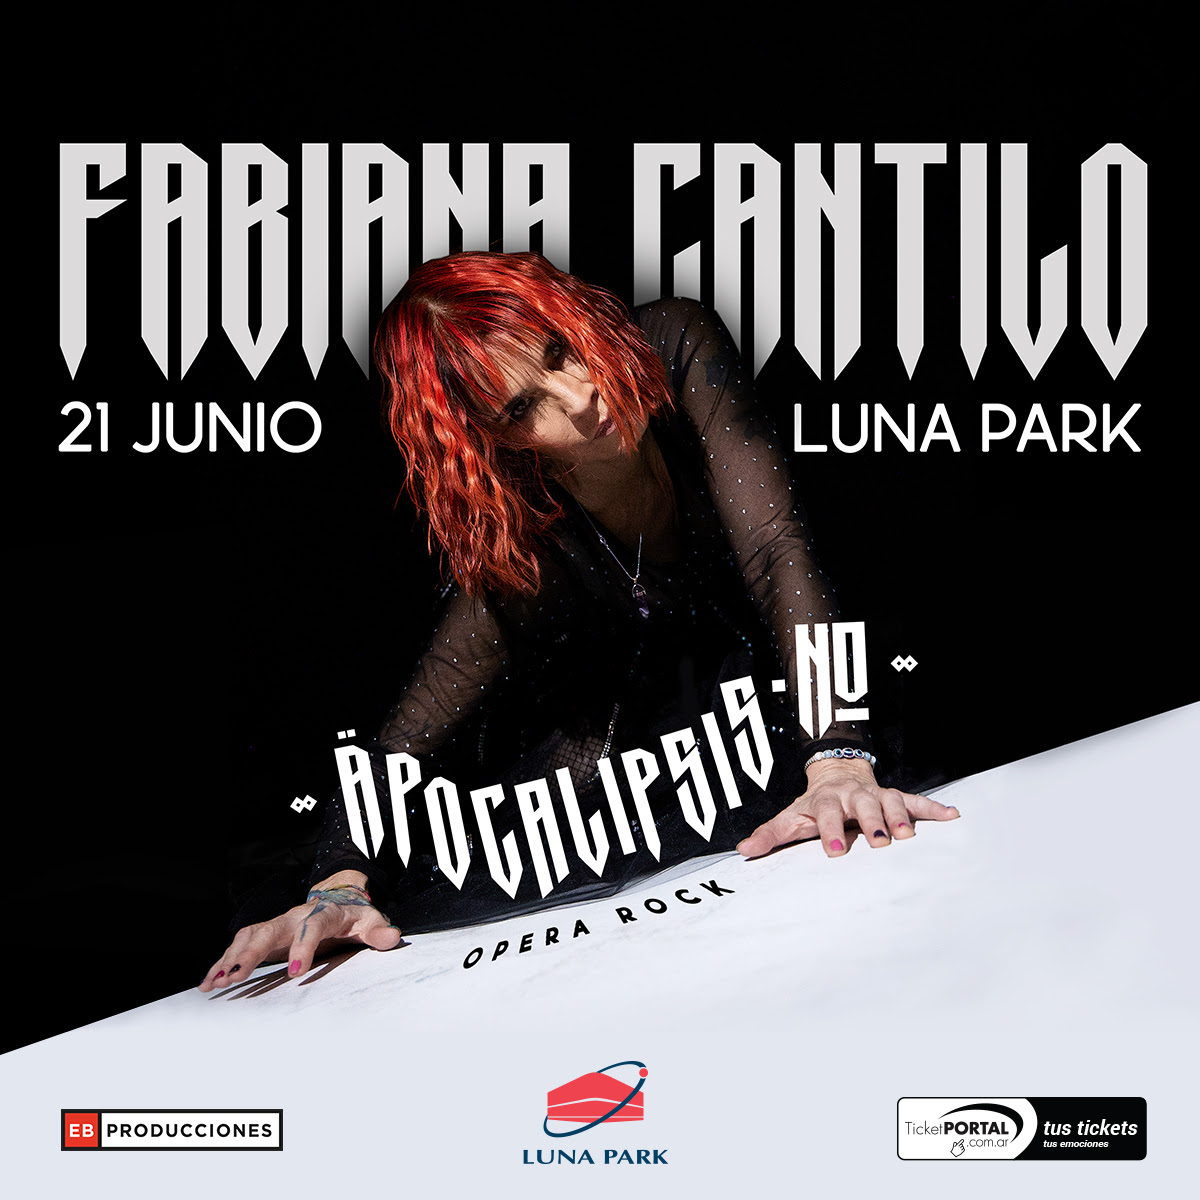 Fabiana Cantilo en el Luna Park